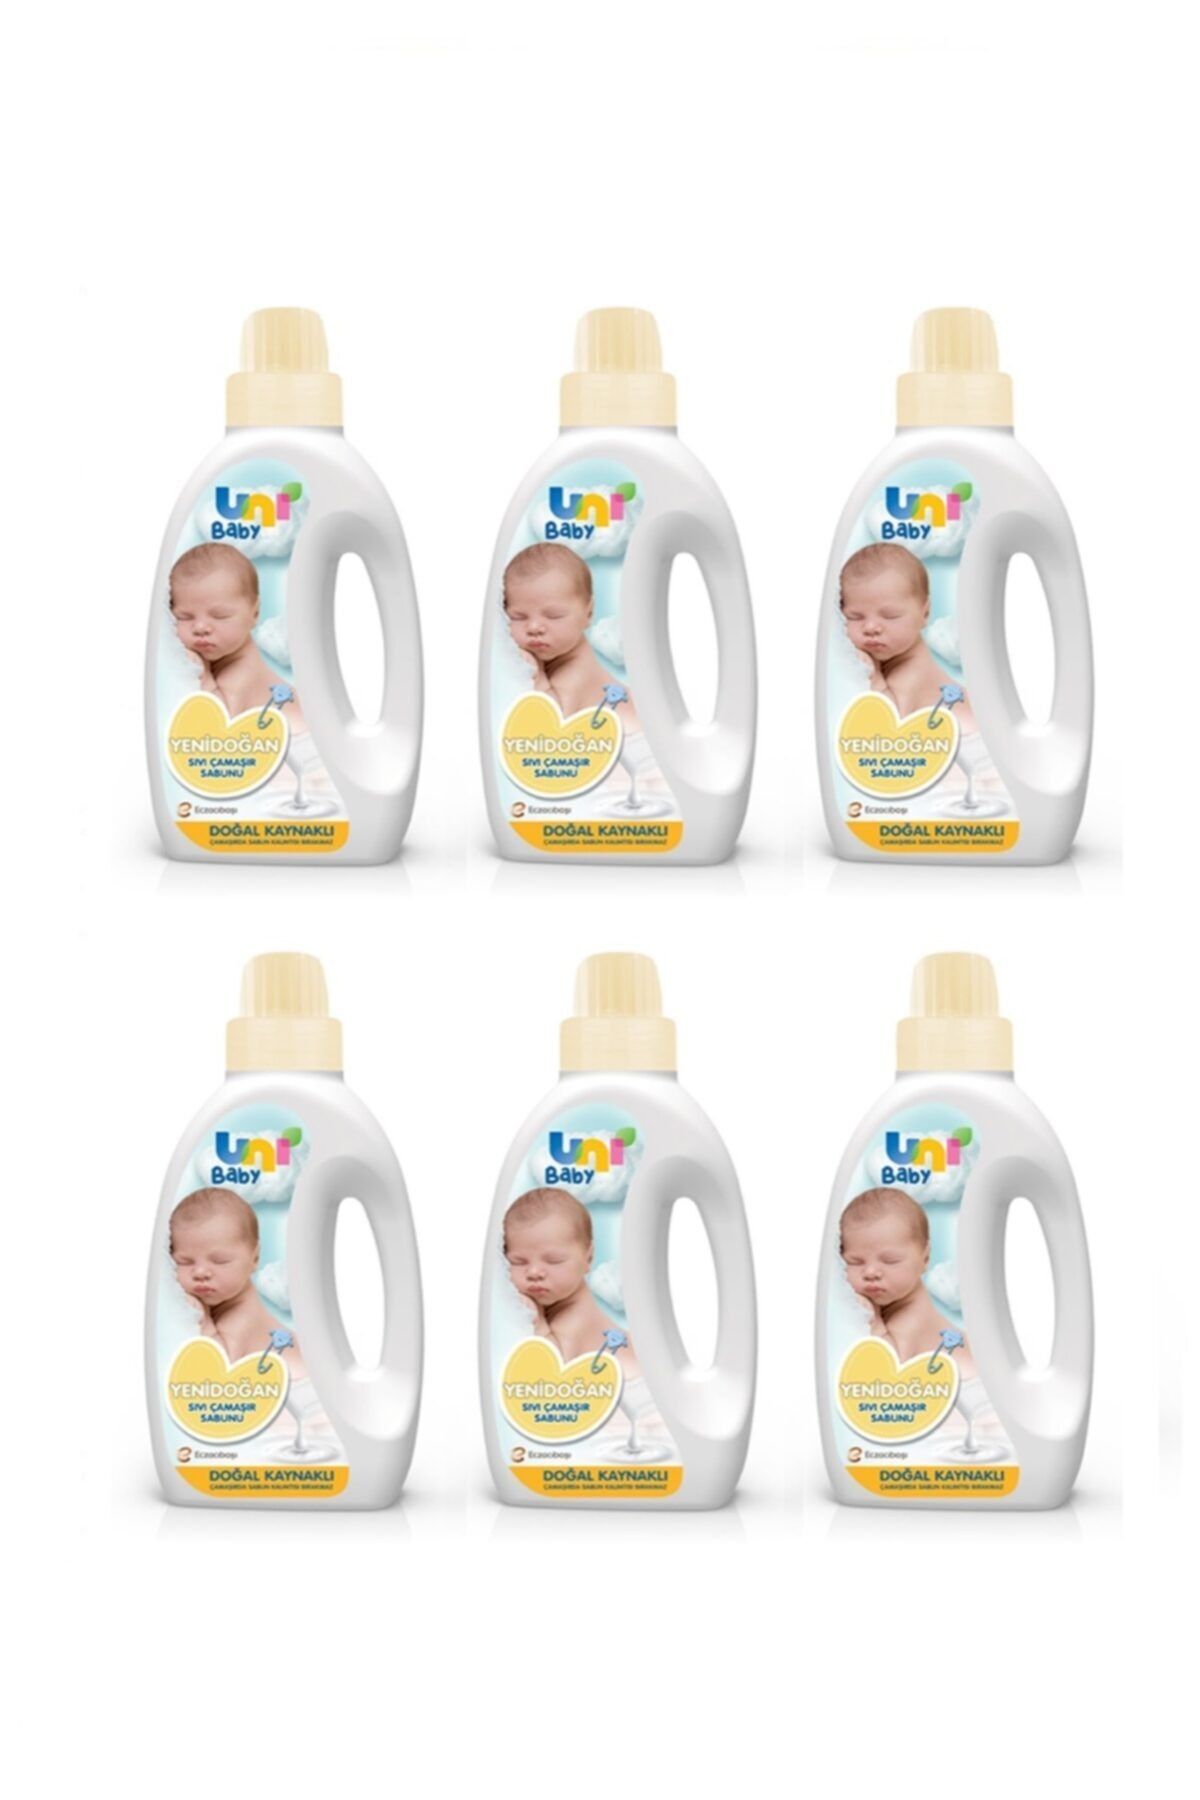 Uni Baby Yeni Doğan Çamaşır Sabunu 6 Adet 1500 ml